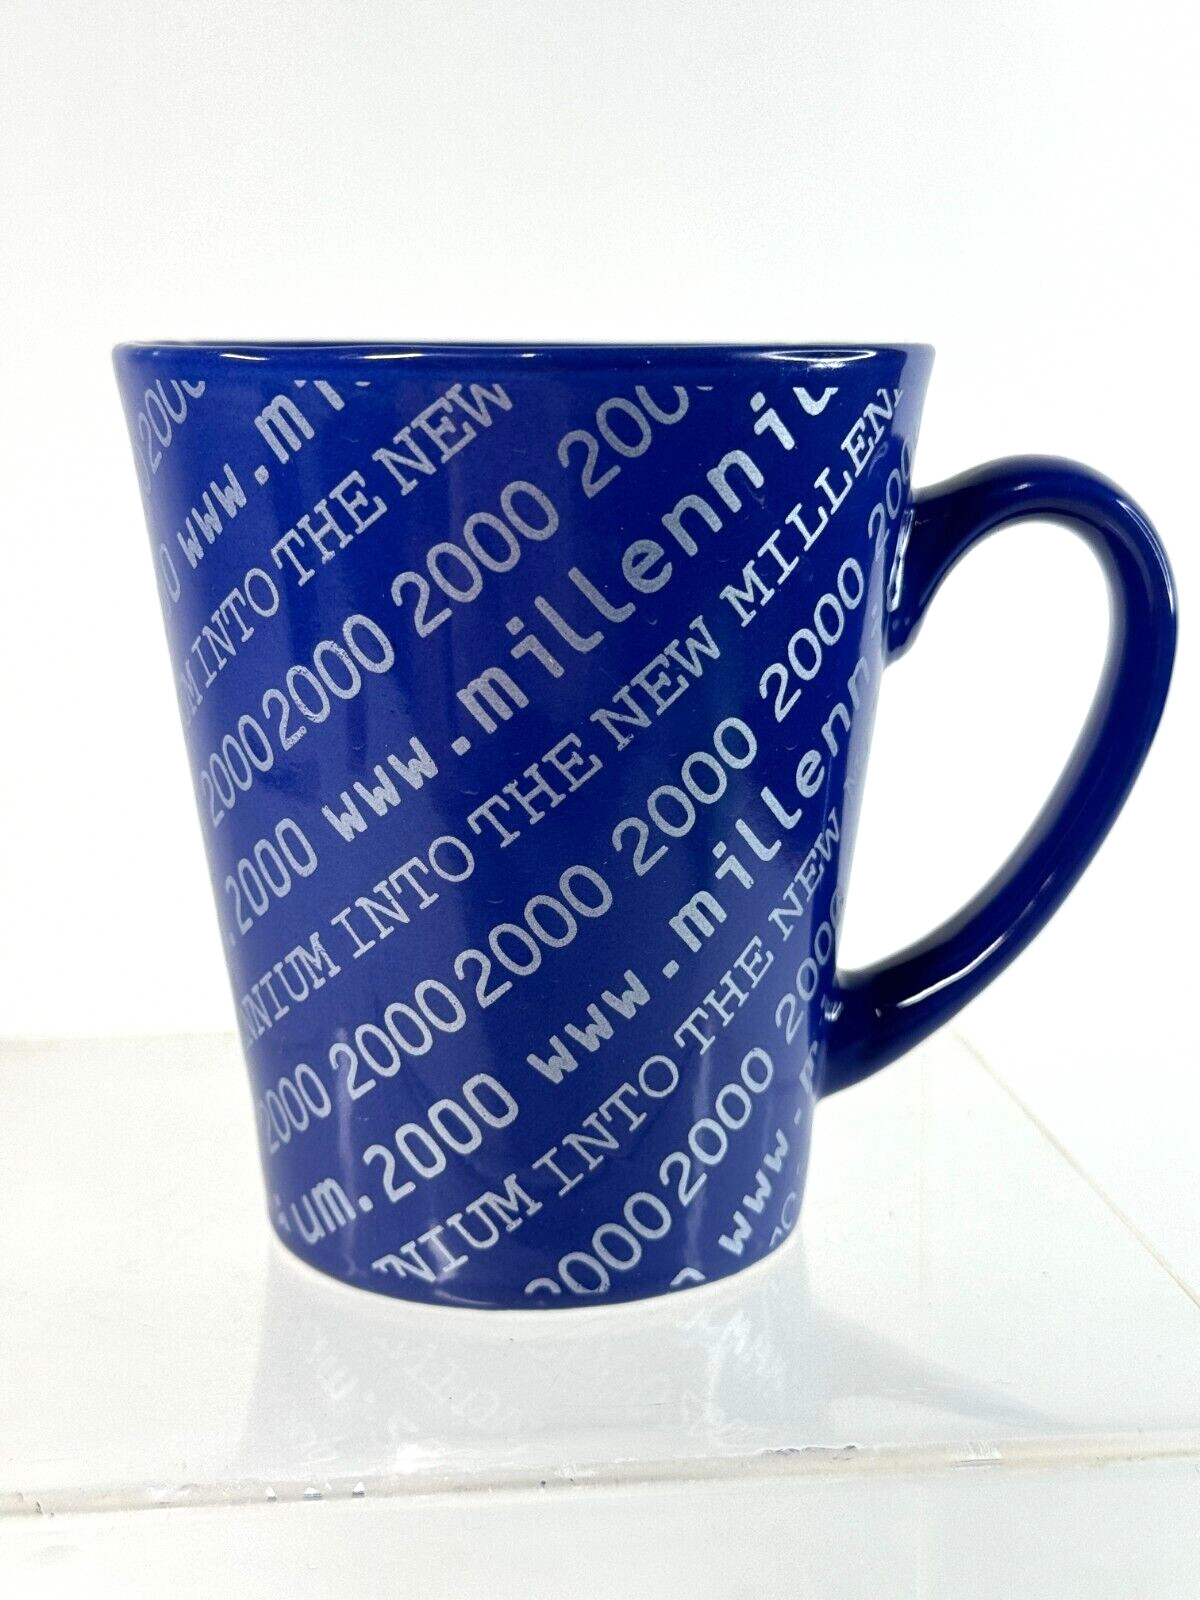 Year 2000 \'MILLENNIUM\' Y2K - Collectors Mug - unused as new condition vintage